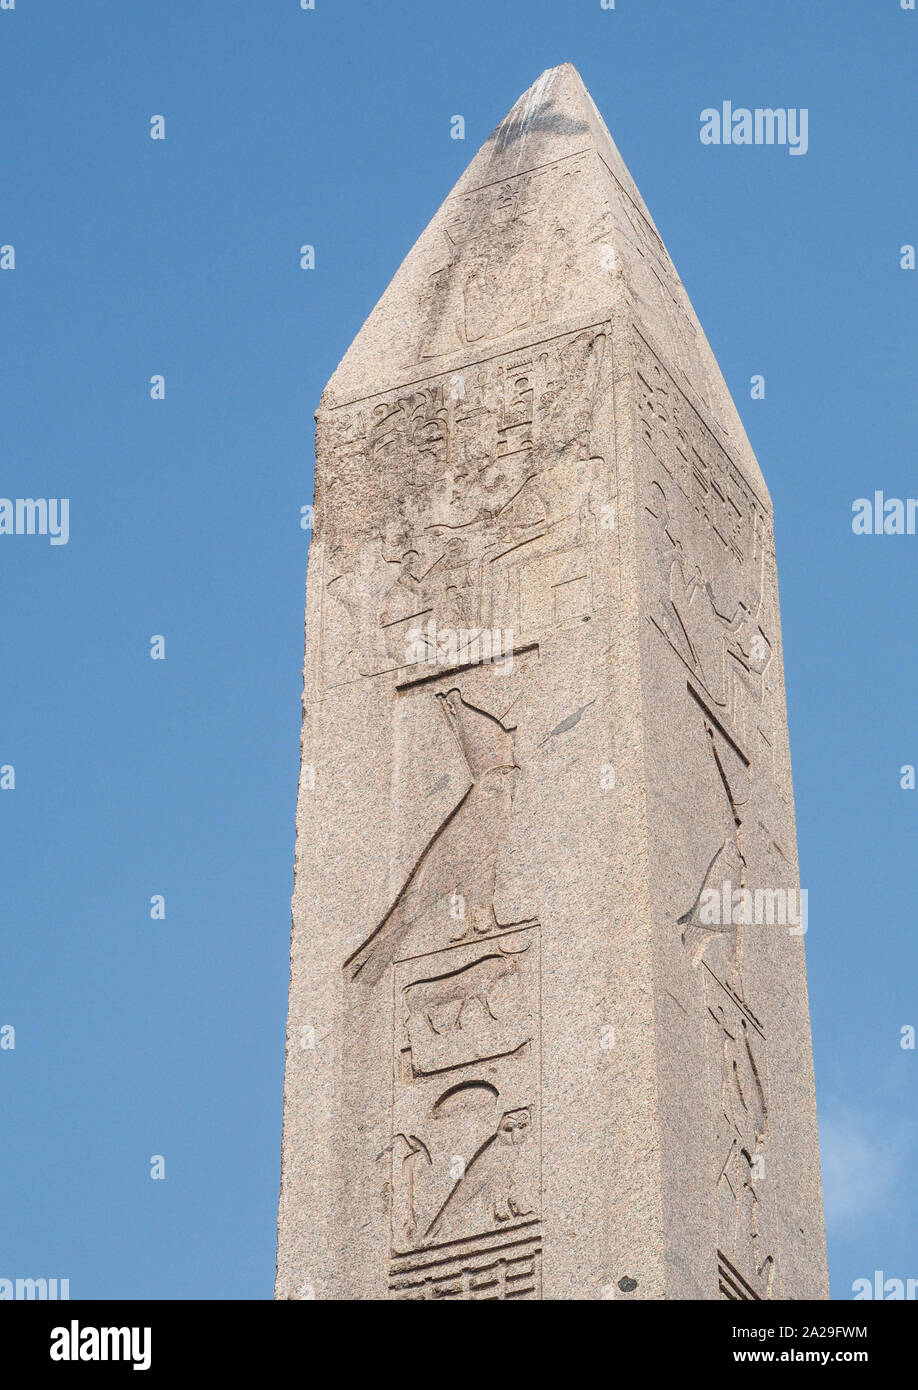 Dettaglio dell'obelisco di Teodosio Foto Stock